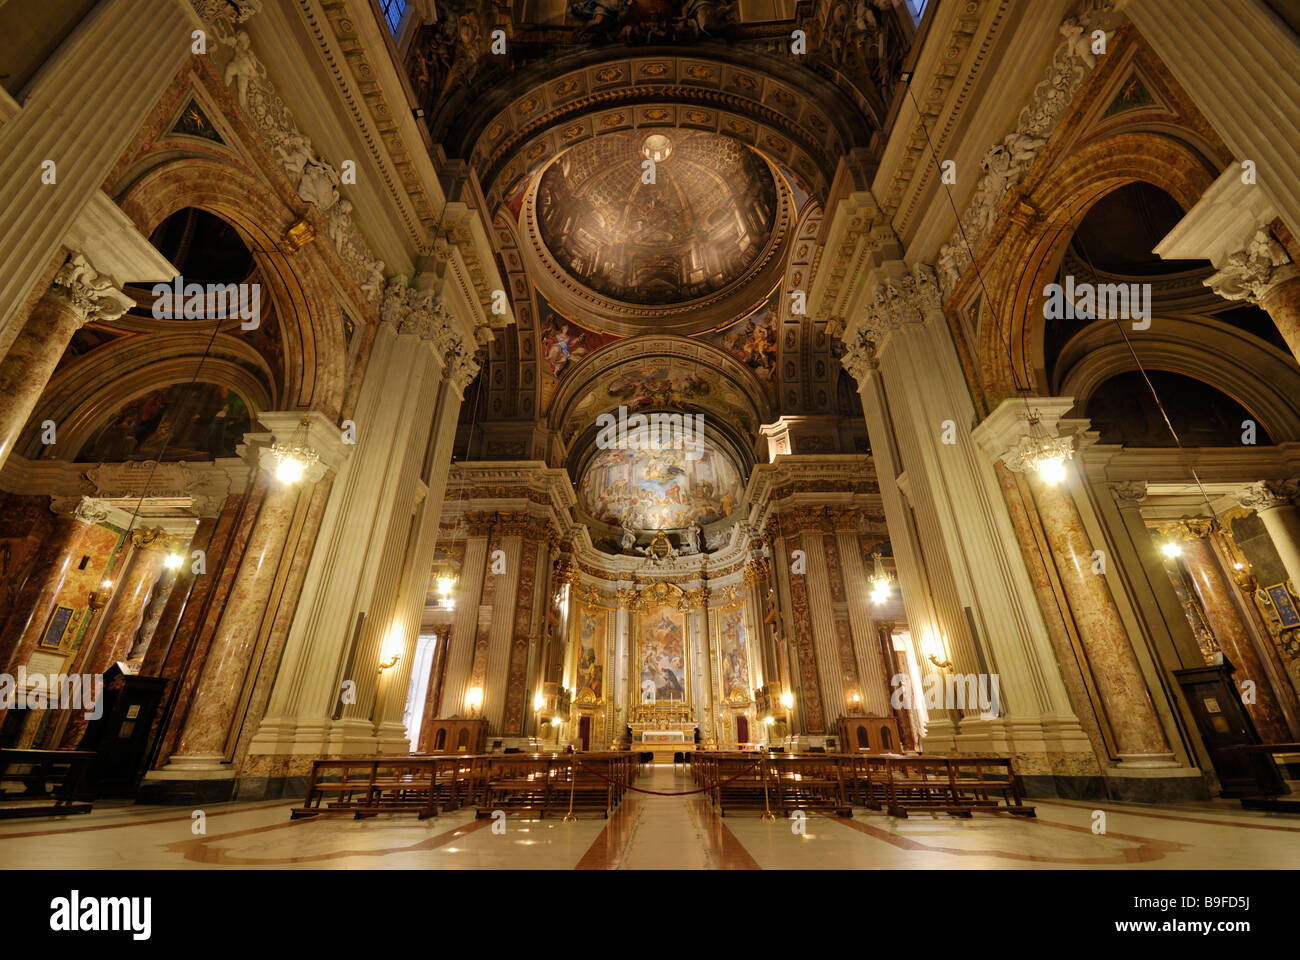 Interiors of church, Rome, Italy Stock Photo